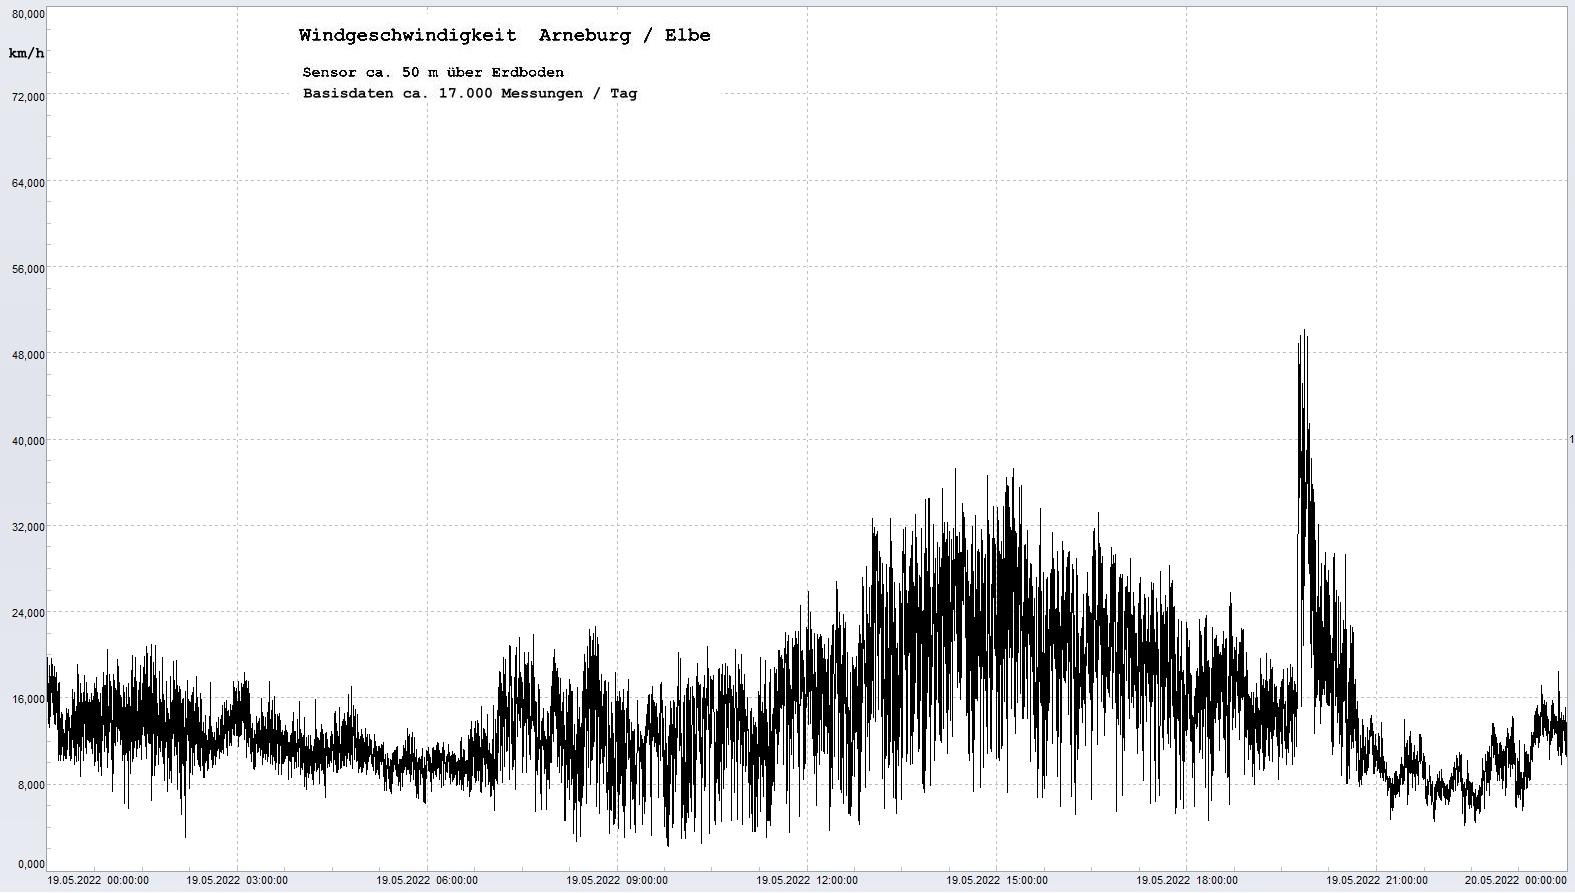 Arneburg Tages-Diagramm Winddaten, 19.05.2022
  Diagramm, Sensor auf Gebude, ca. 50 m ber Erdboden, Basis: 5s-Aufzeichnung